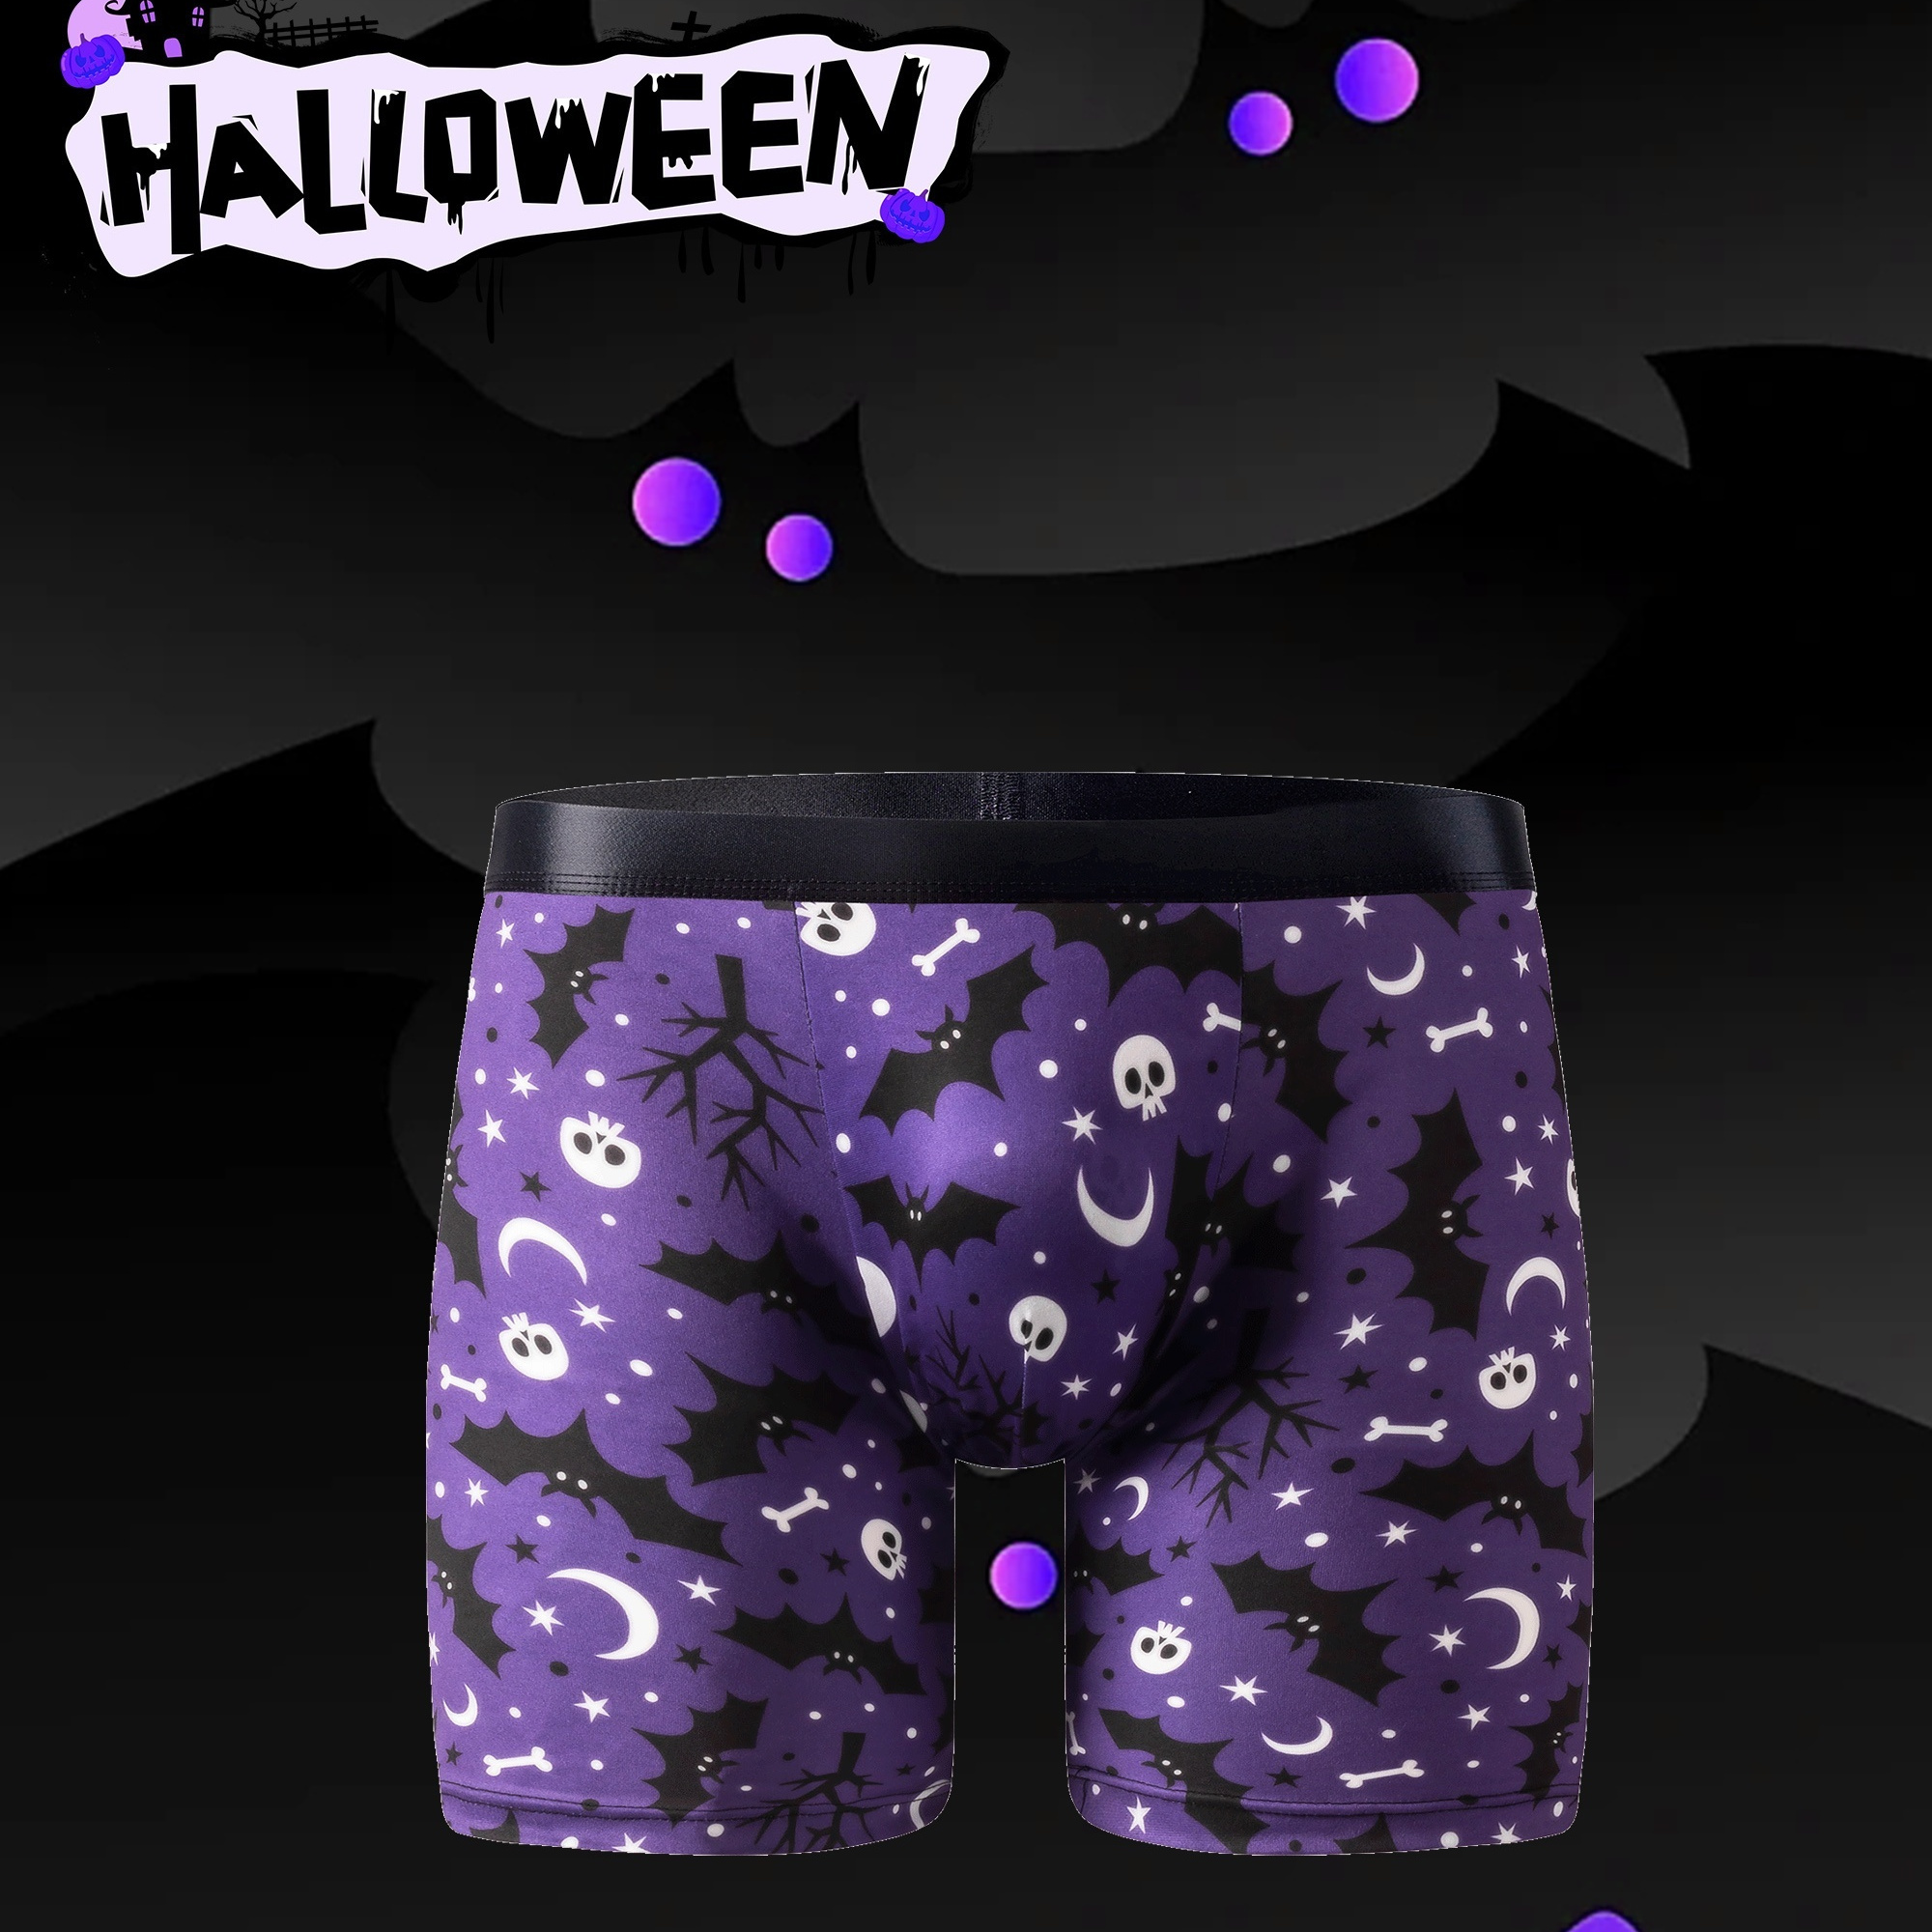 Spooky Halloween Underwear by Shinesty